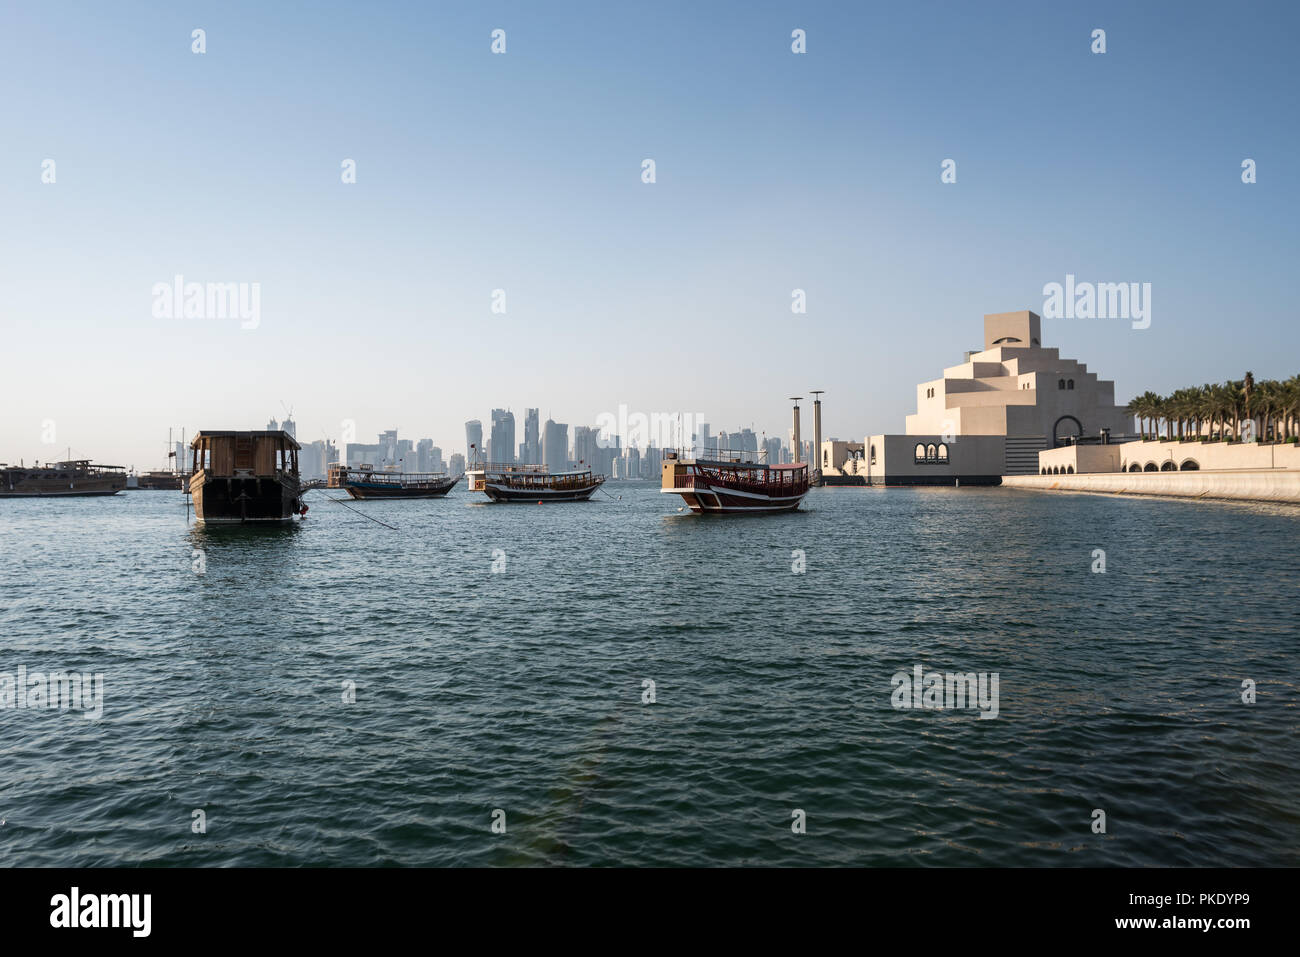 Il Museo di Arte Islamica di Doha in Qatar Foto Stock